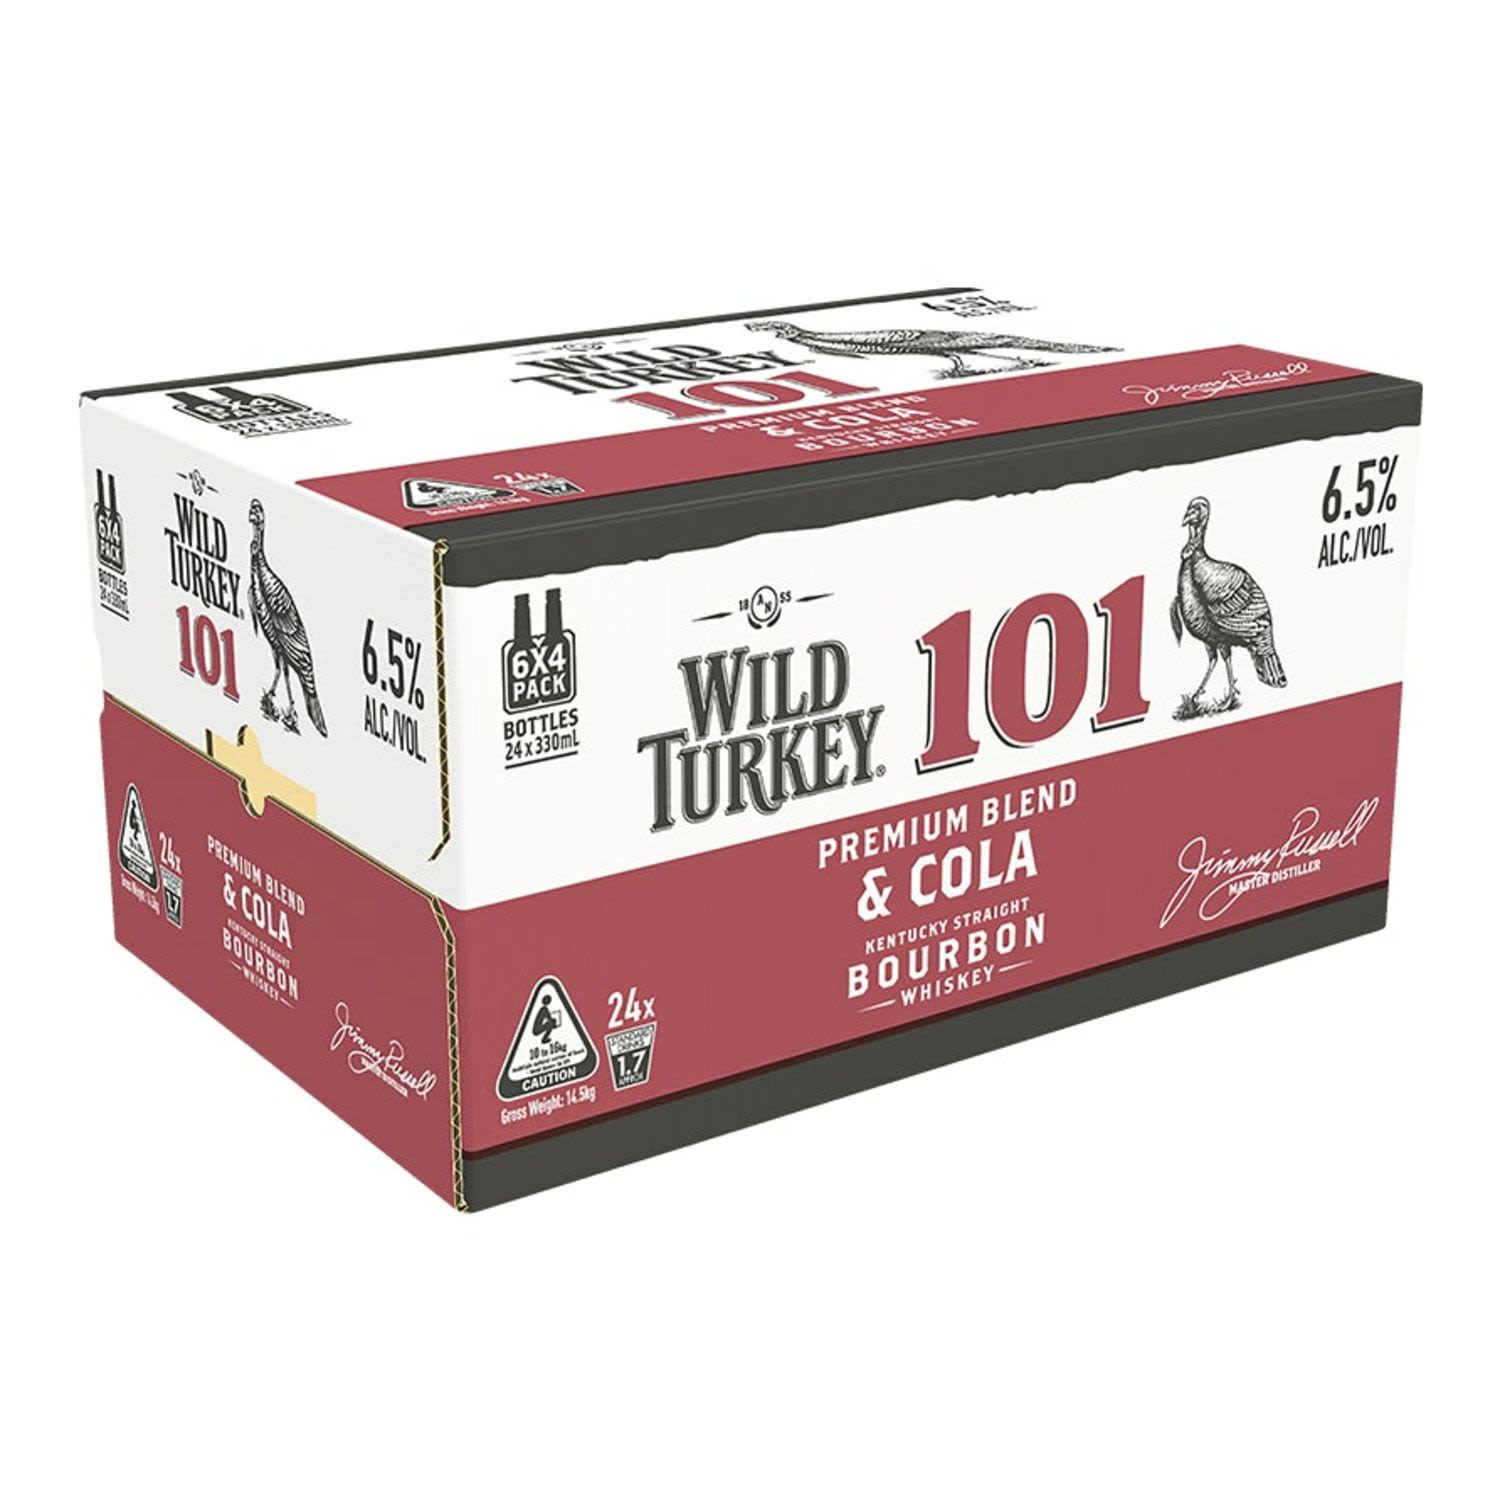 Wild Turkey 101 Bourbon & Cola Bottle 330mL 24 Pack